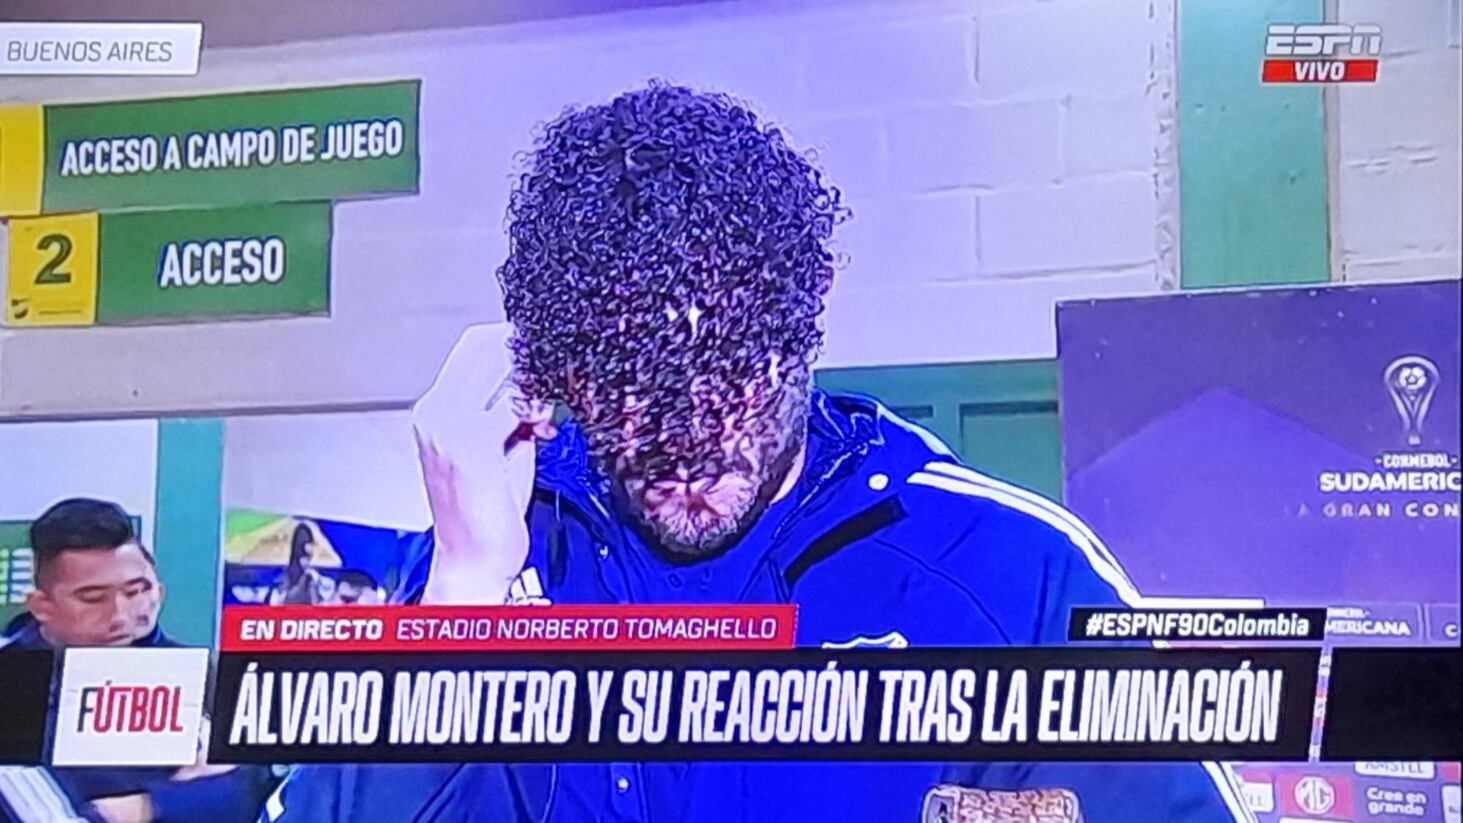 El jugador Álvaro Montero fulminado en redes por su “peinado” tras la eliminación de Millonarios en la Sudamericana